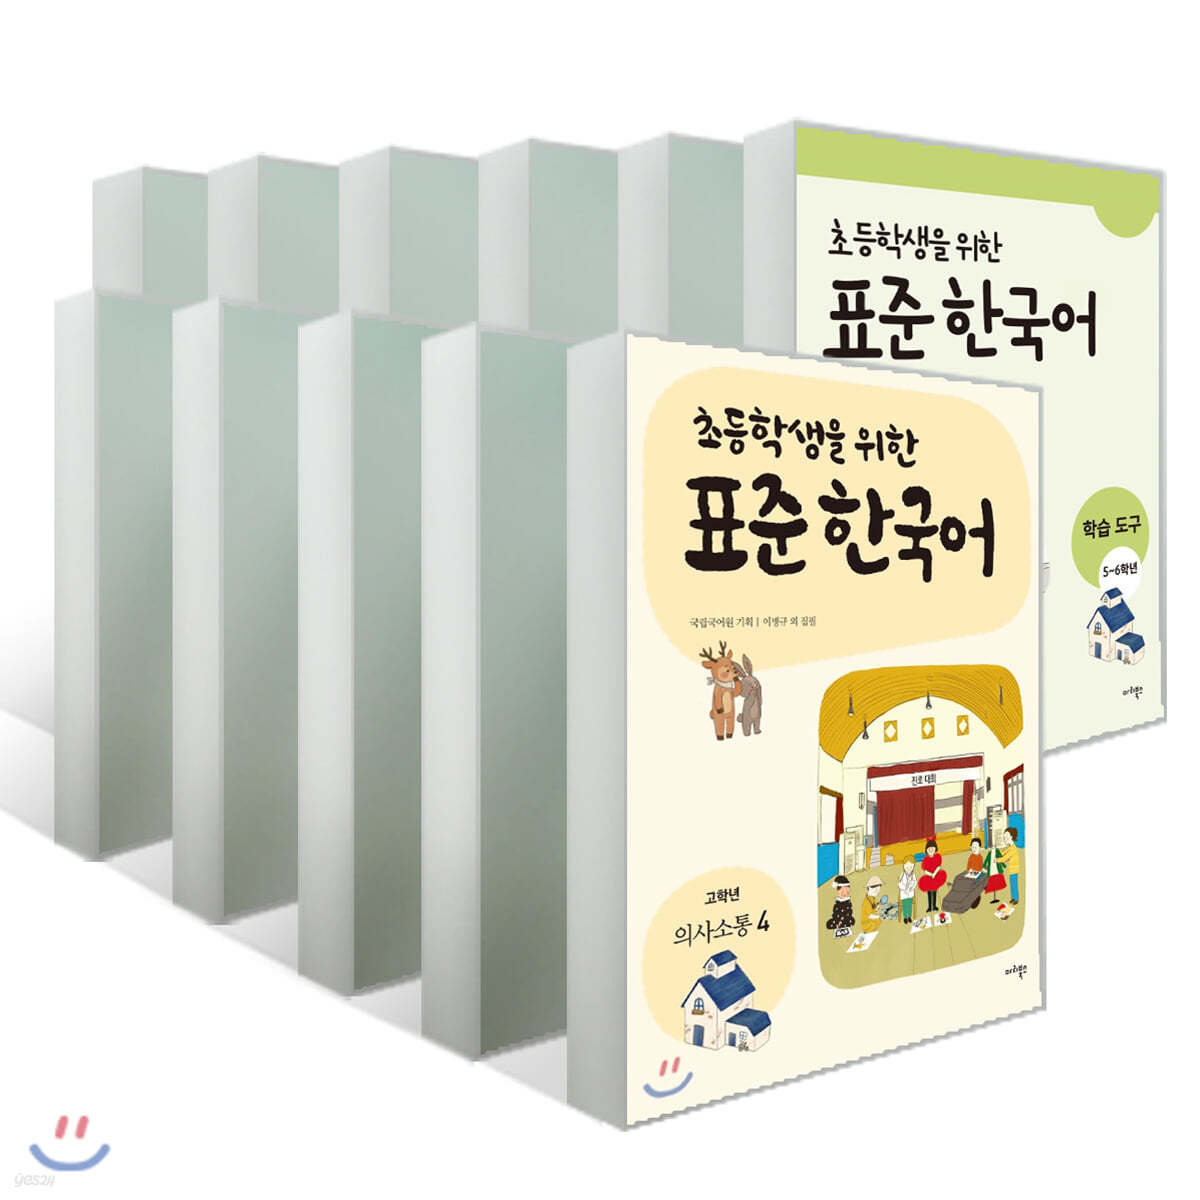 초등학생을 위한 표준 한국어 11권 전권 세트